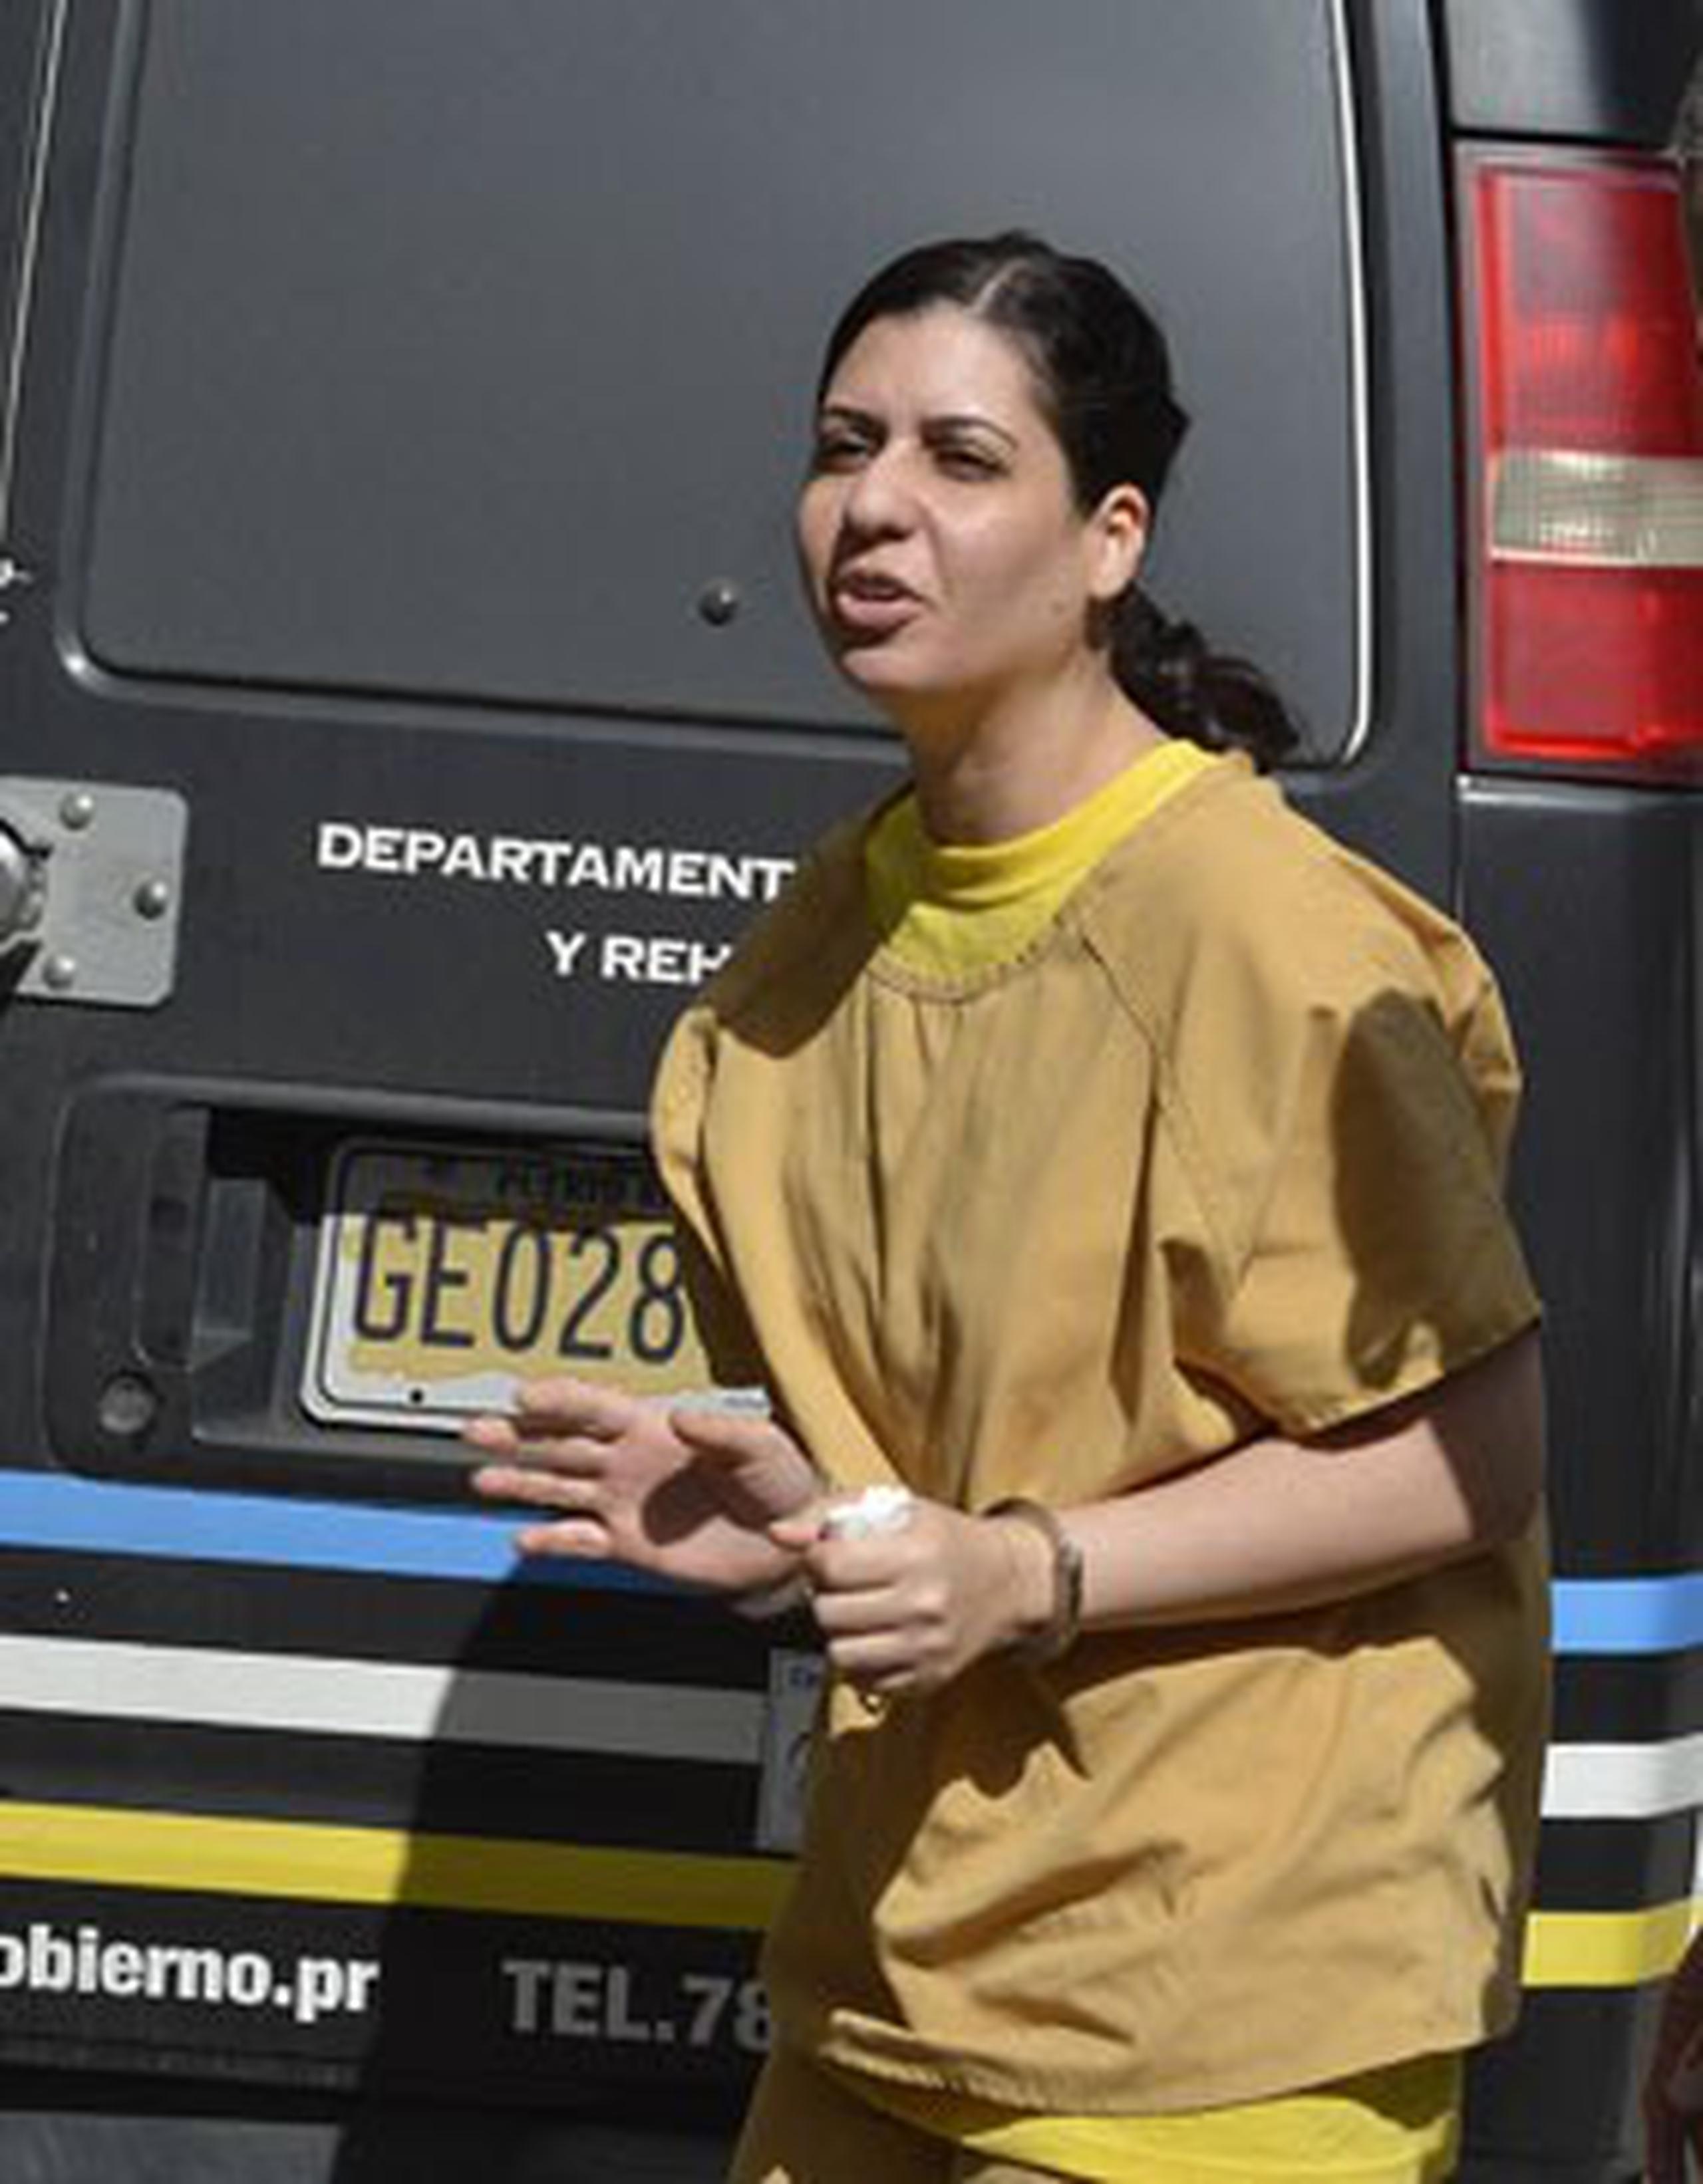 La jueza Isabel Llompart, del Centro Judicial de San Juan ordenó la excarcelación de la profesora Maha Abdel Rahim. (jose.rodriguez@gfrmedia.com)
